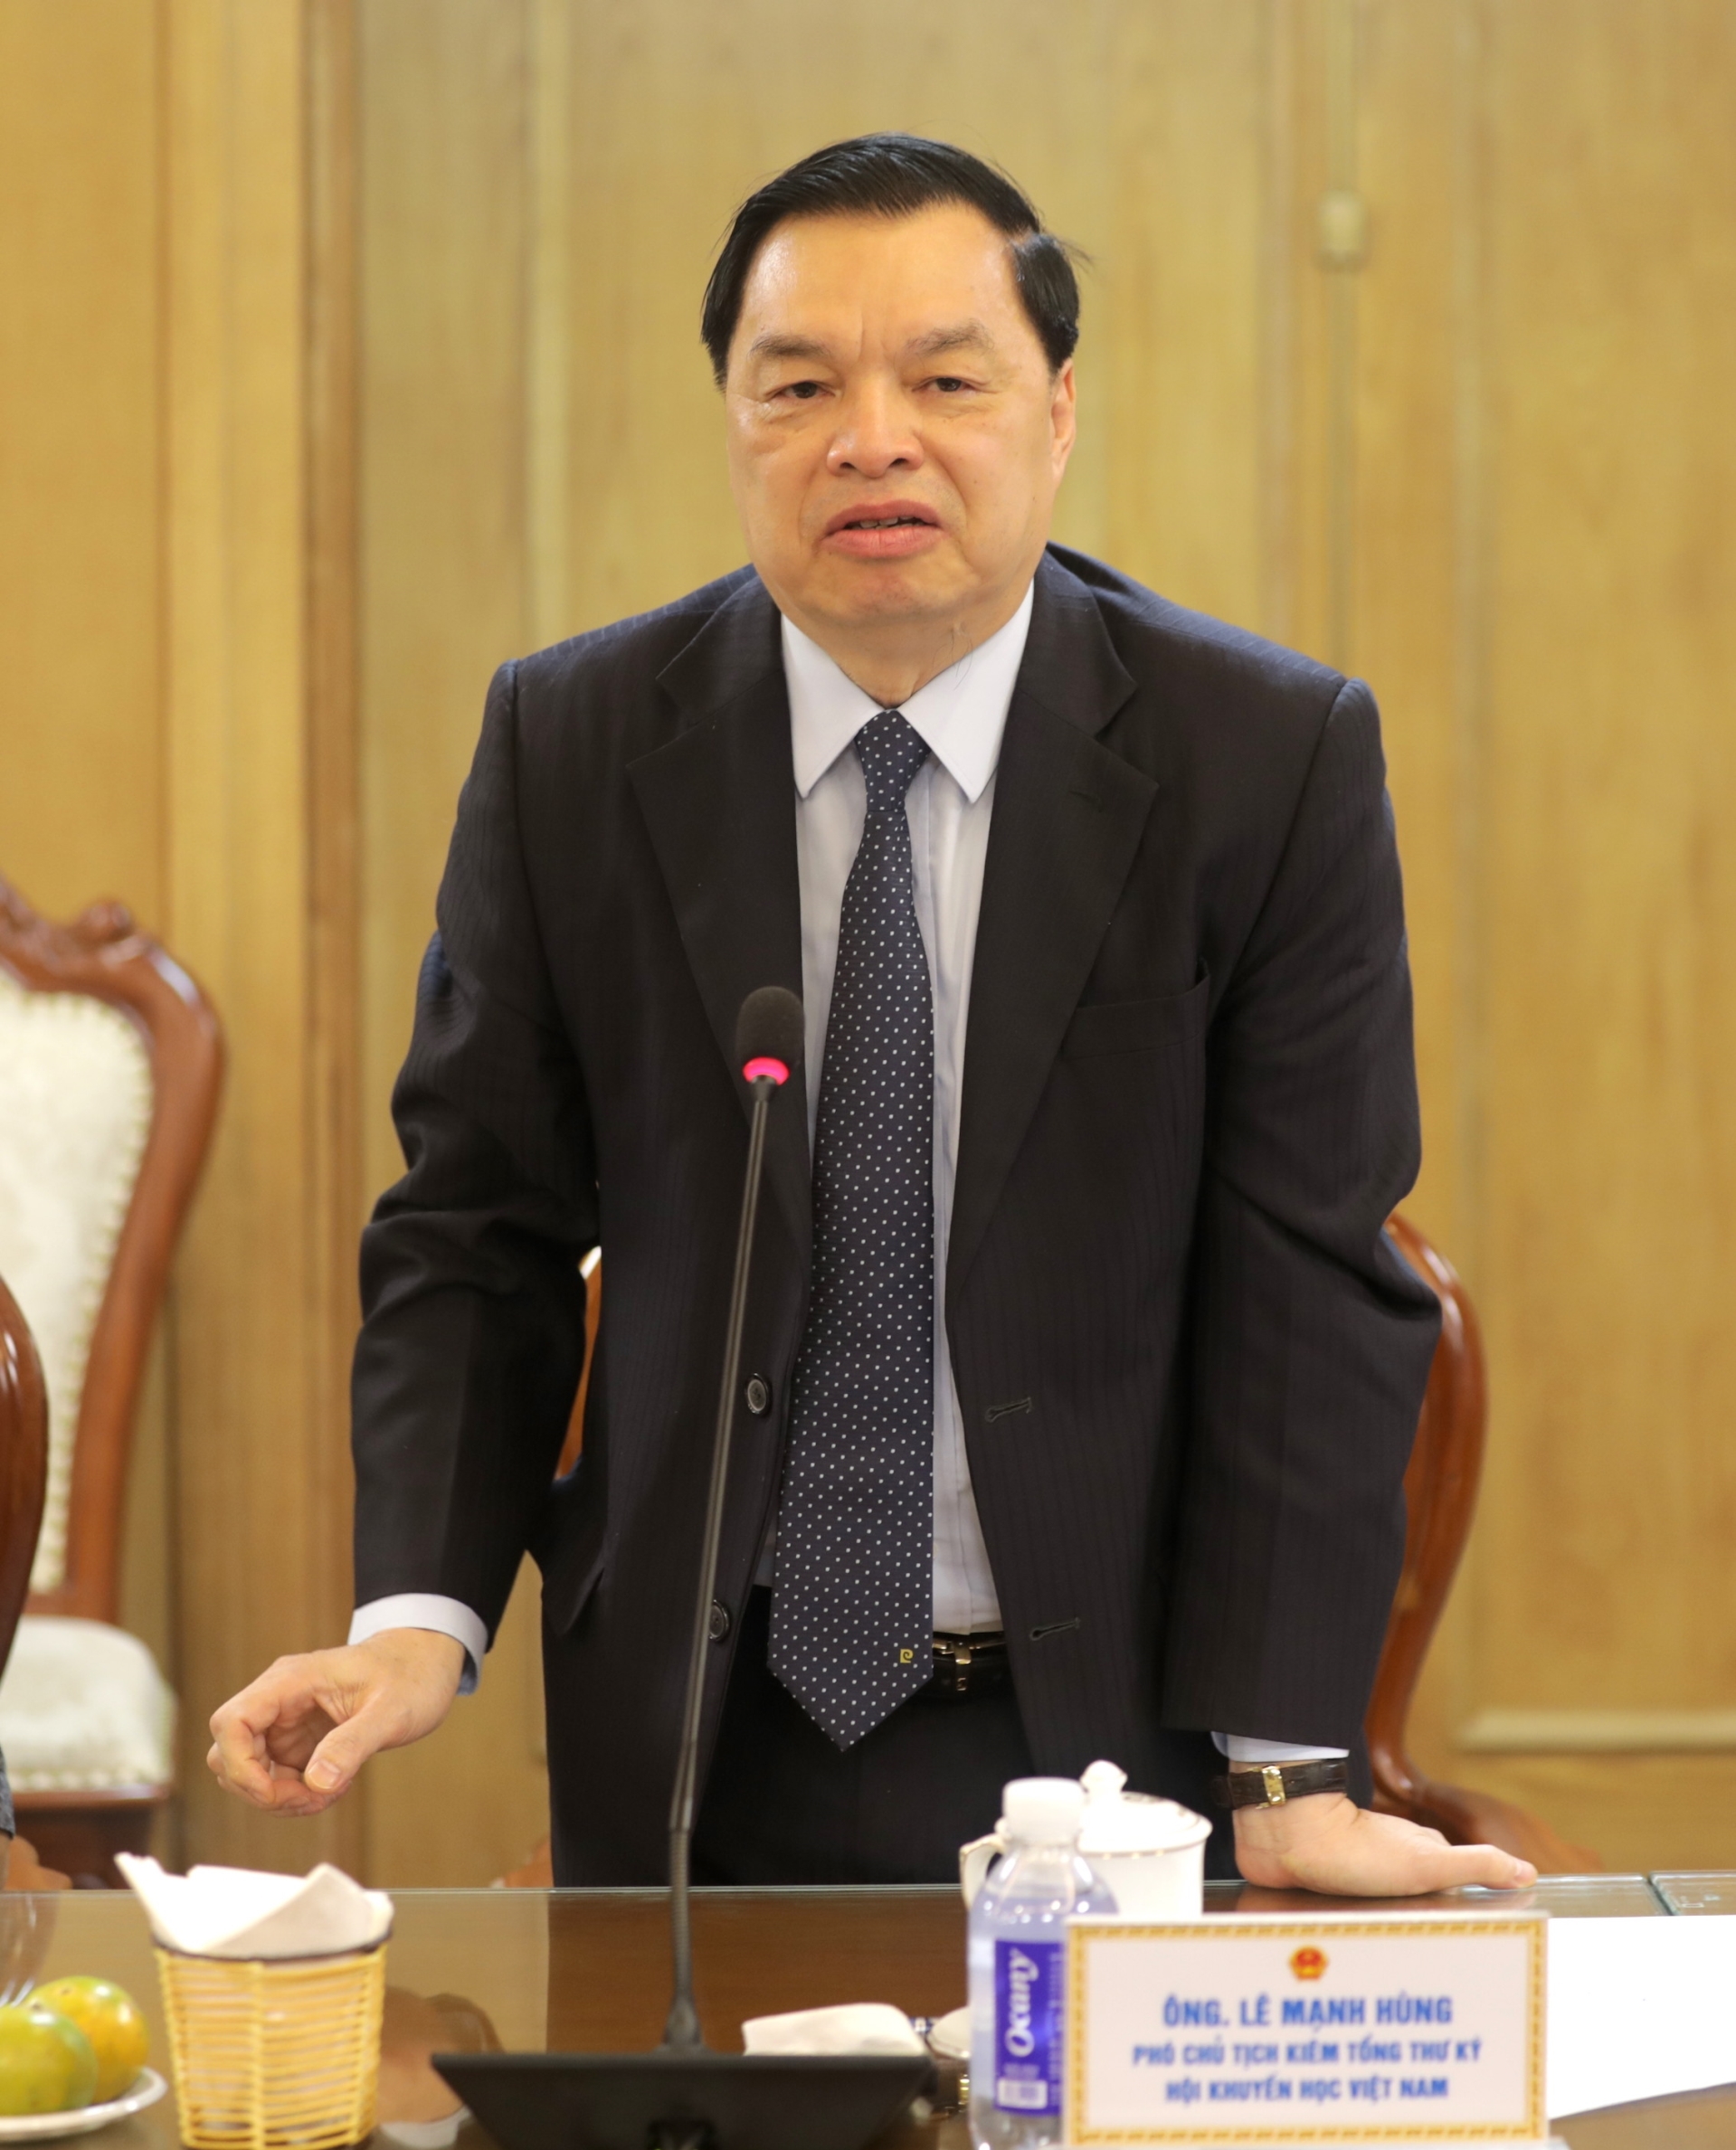 Phó Chủ tịch kiêm Tổng thư ký Hội Khuyến học Việt Nam Lê Mạnh Hùng phát biểu tại buổi lễ.